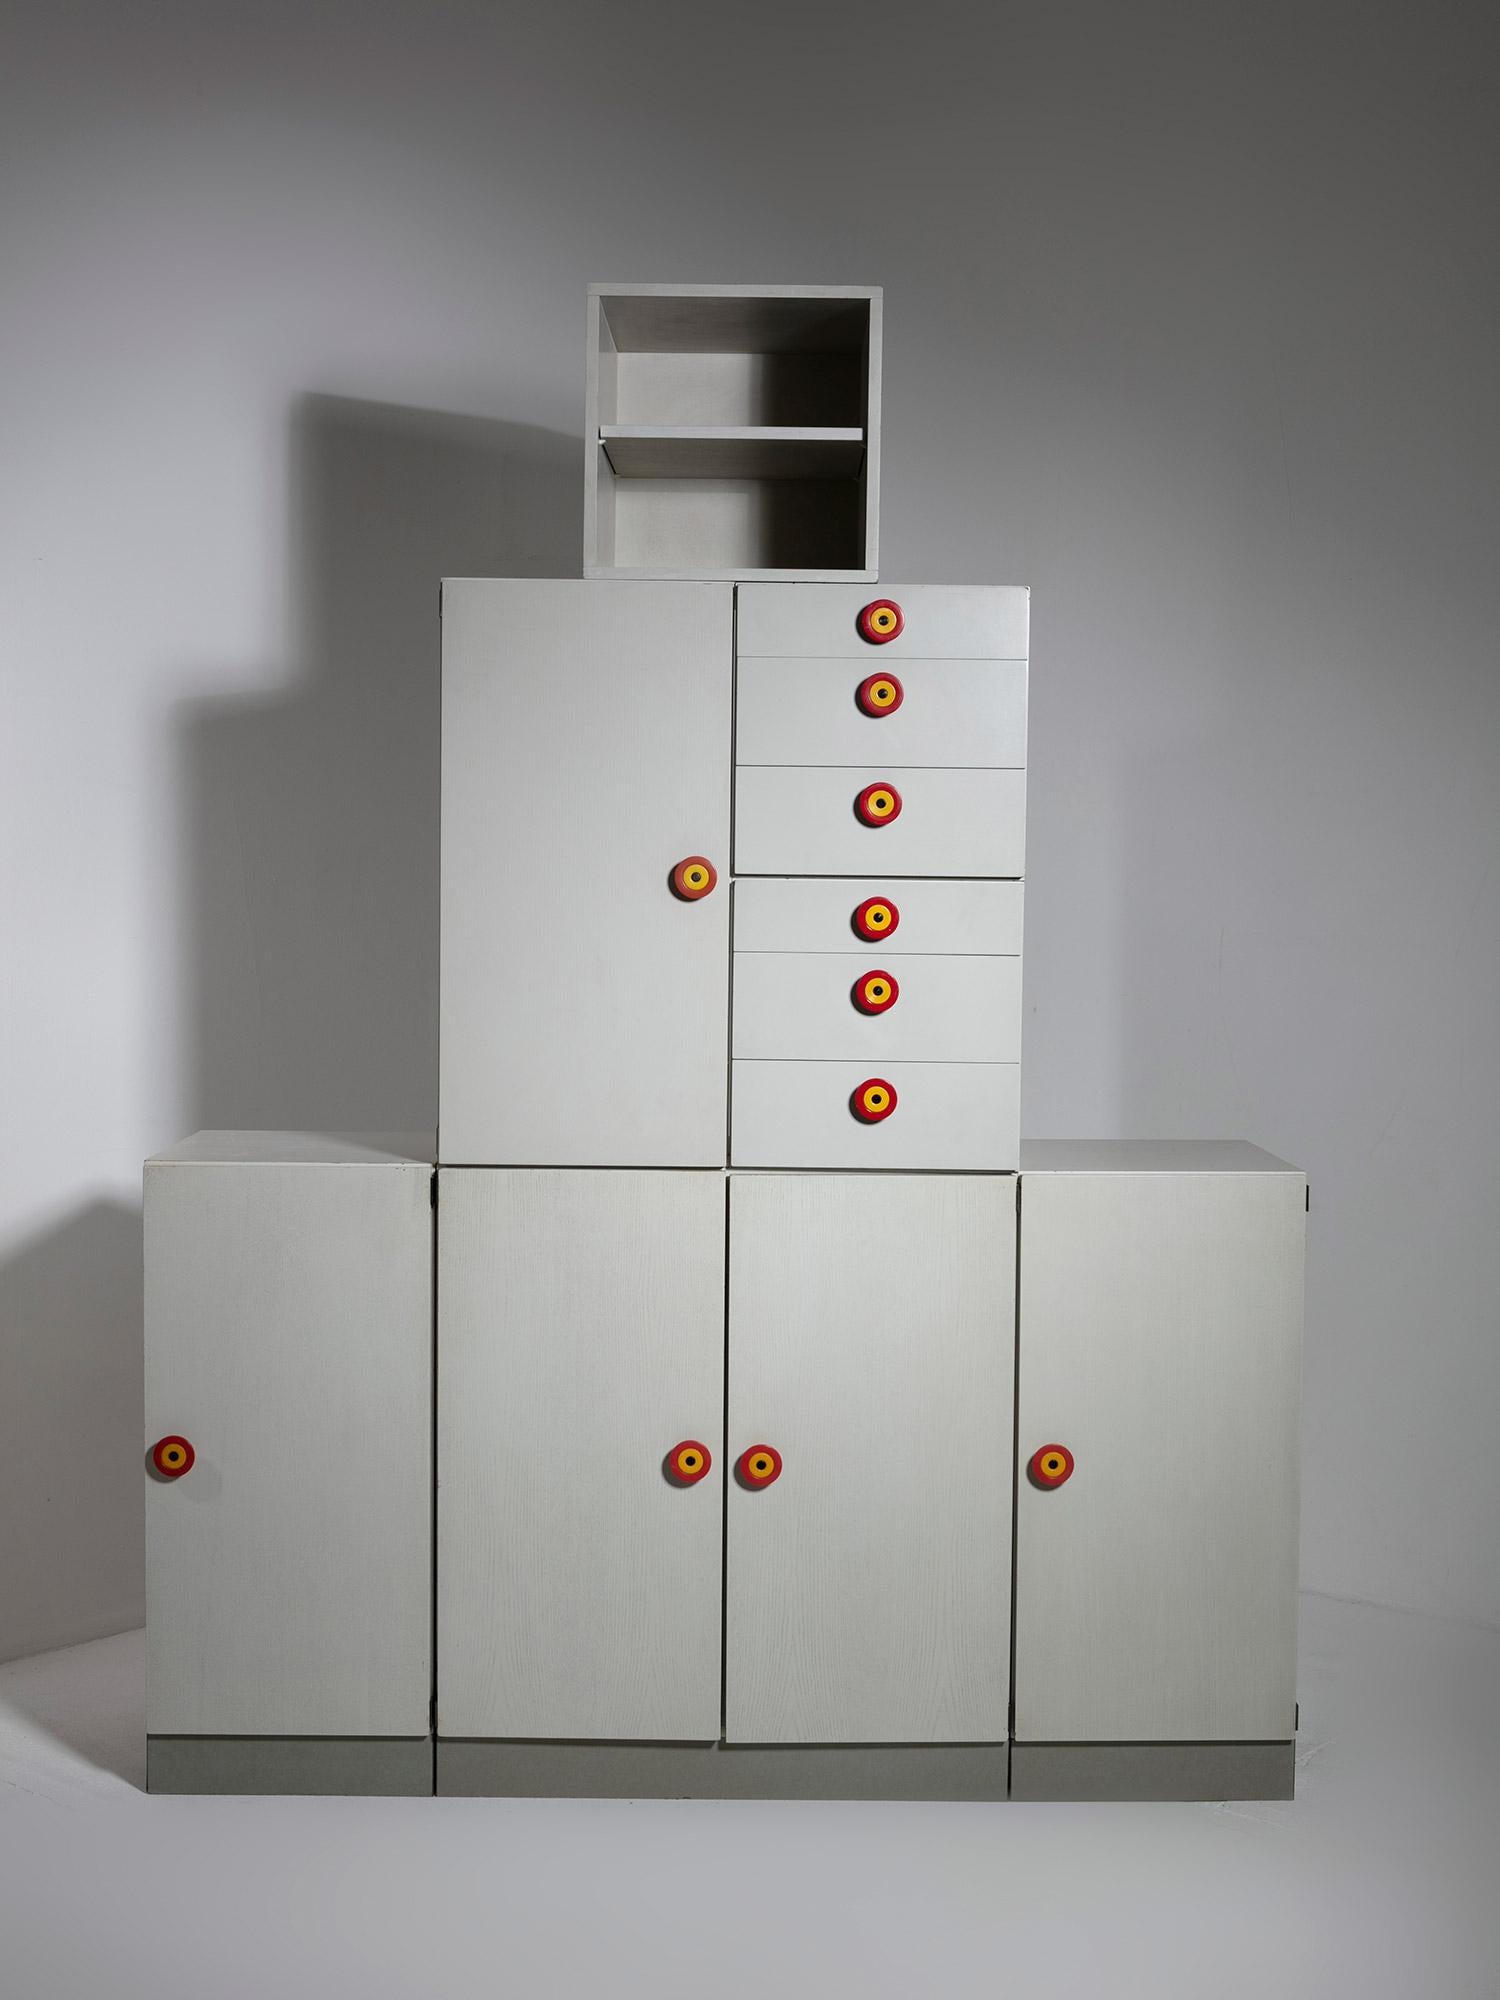 Rare ensemble de 7 étagères modulaires Kubirolo d'Ettore Sottsass pour Poltronova.
Les éléments peuvent être positionnés de plusieurs manières, de l'horizontale complète à la verticale, créant ainsi différents paysages.
La taille se réfère à la